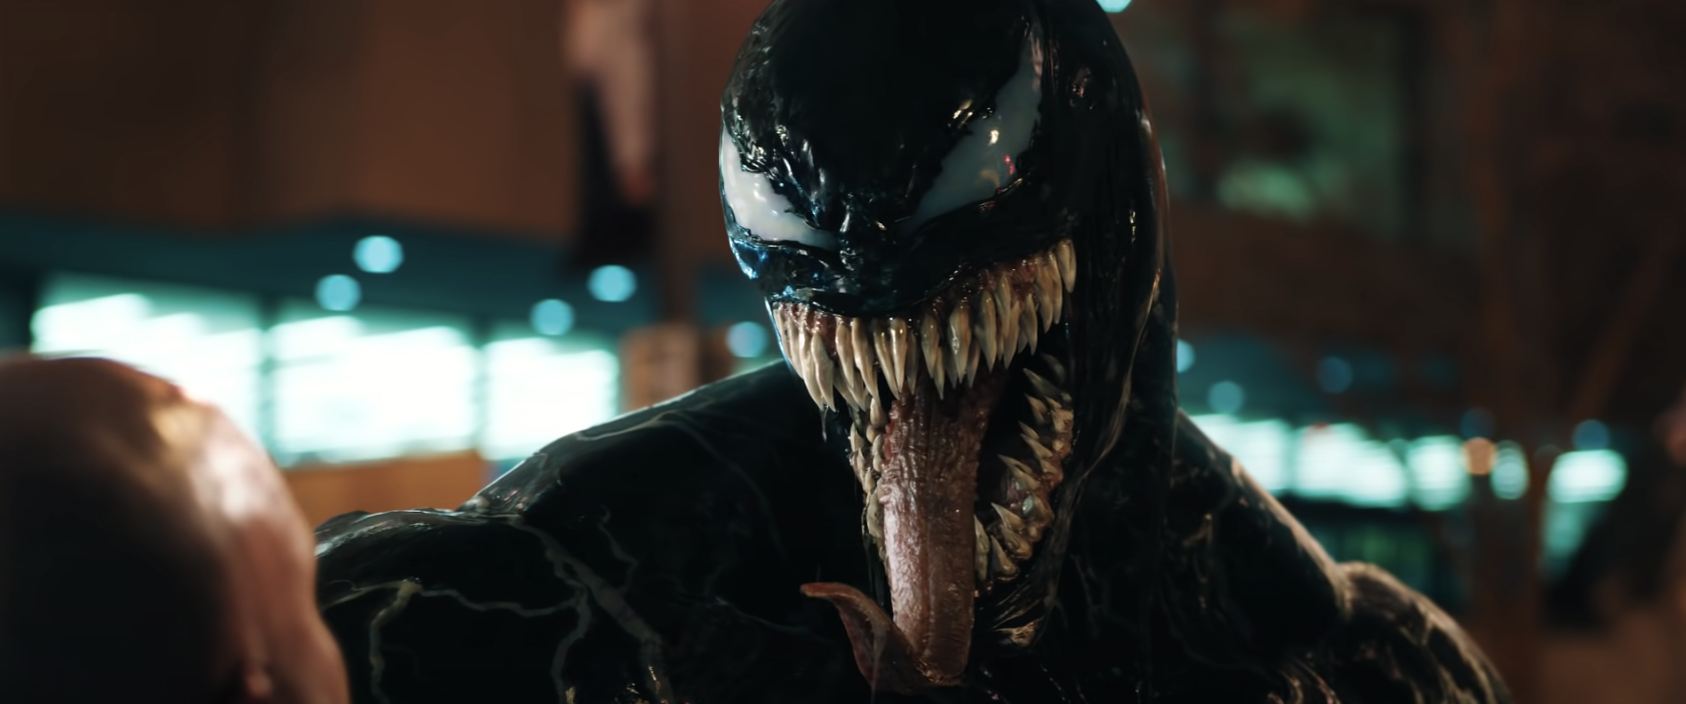 Venom sticks his tongue out